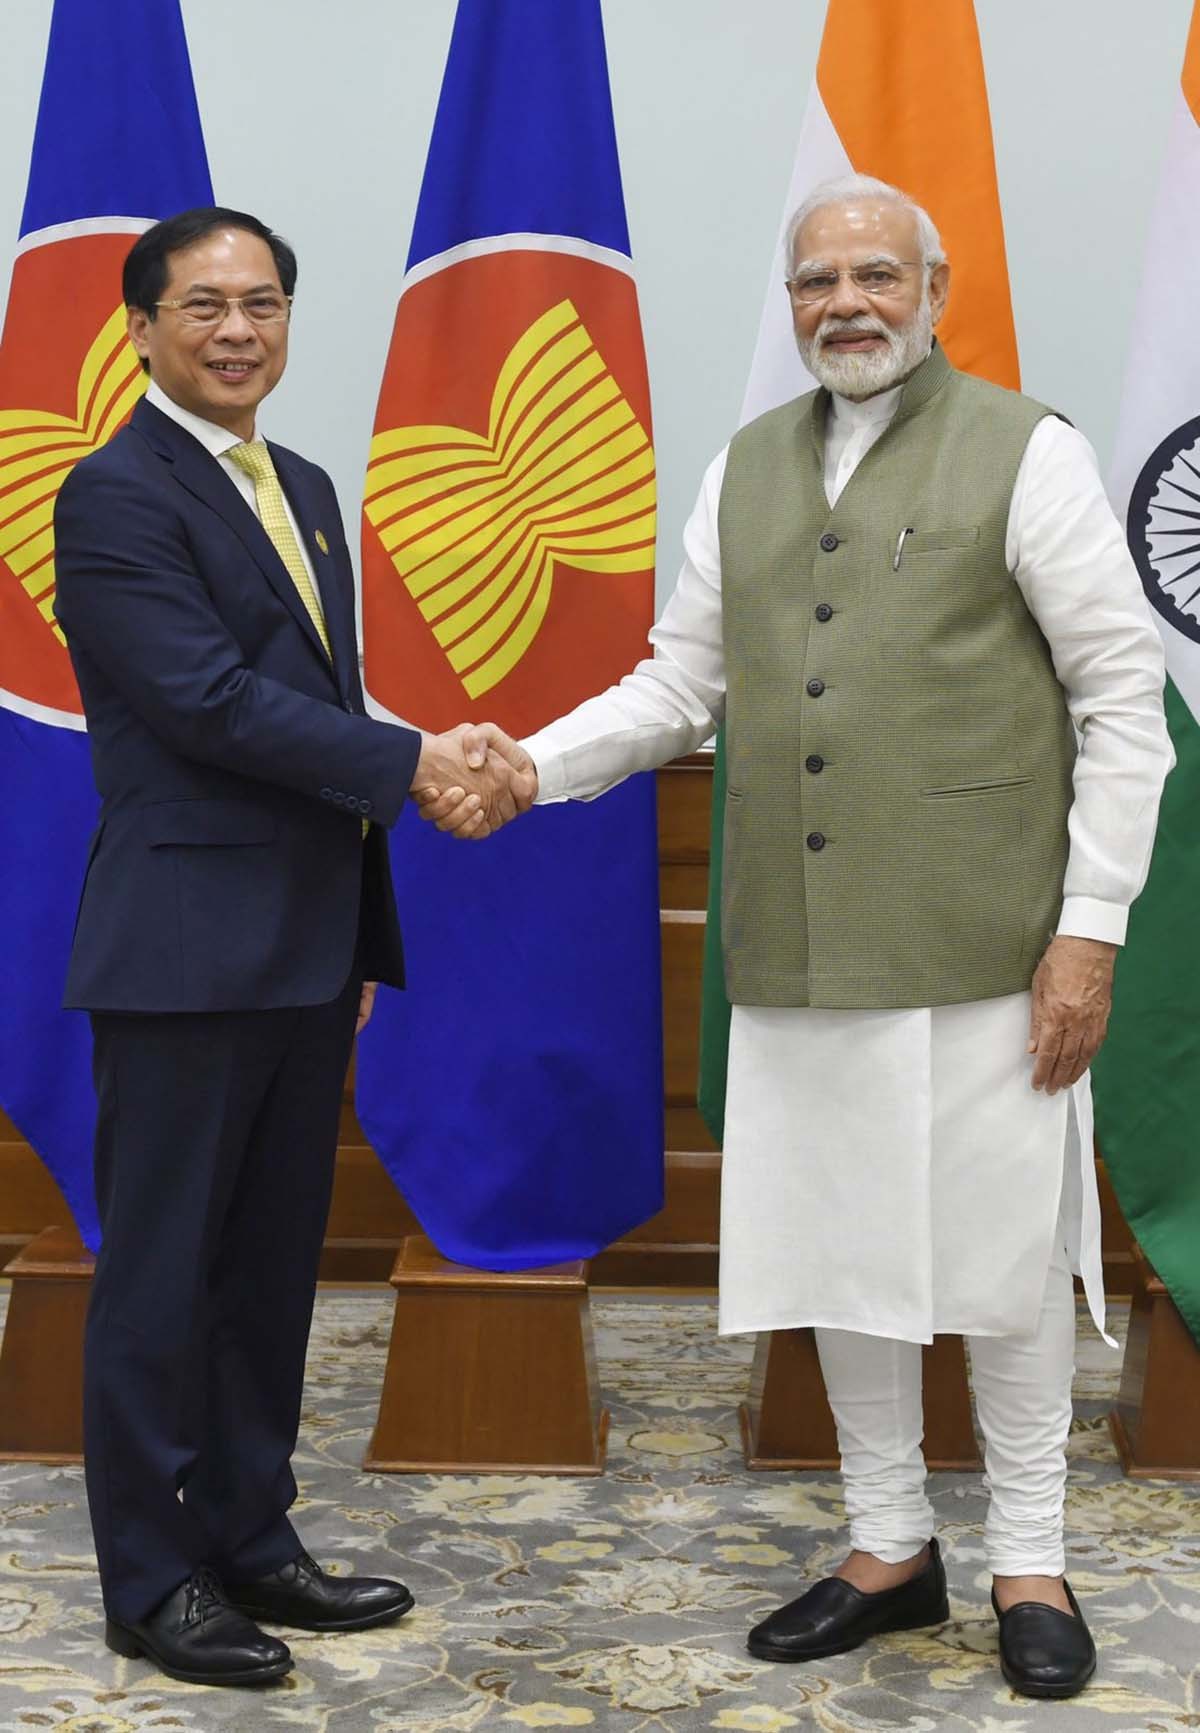 Bộ trưởng Ngoại giao Bùi Thanh Sơn chào xã giao Thủ tướng Ấn Độ Narendra Modi.